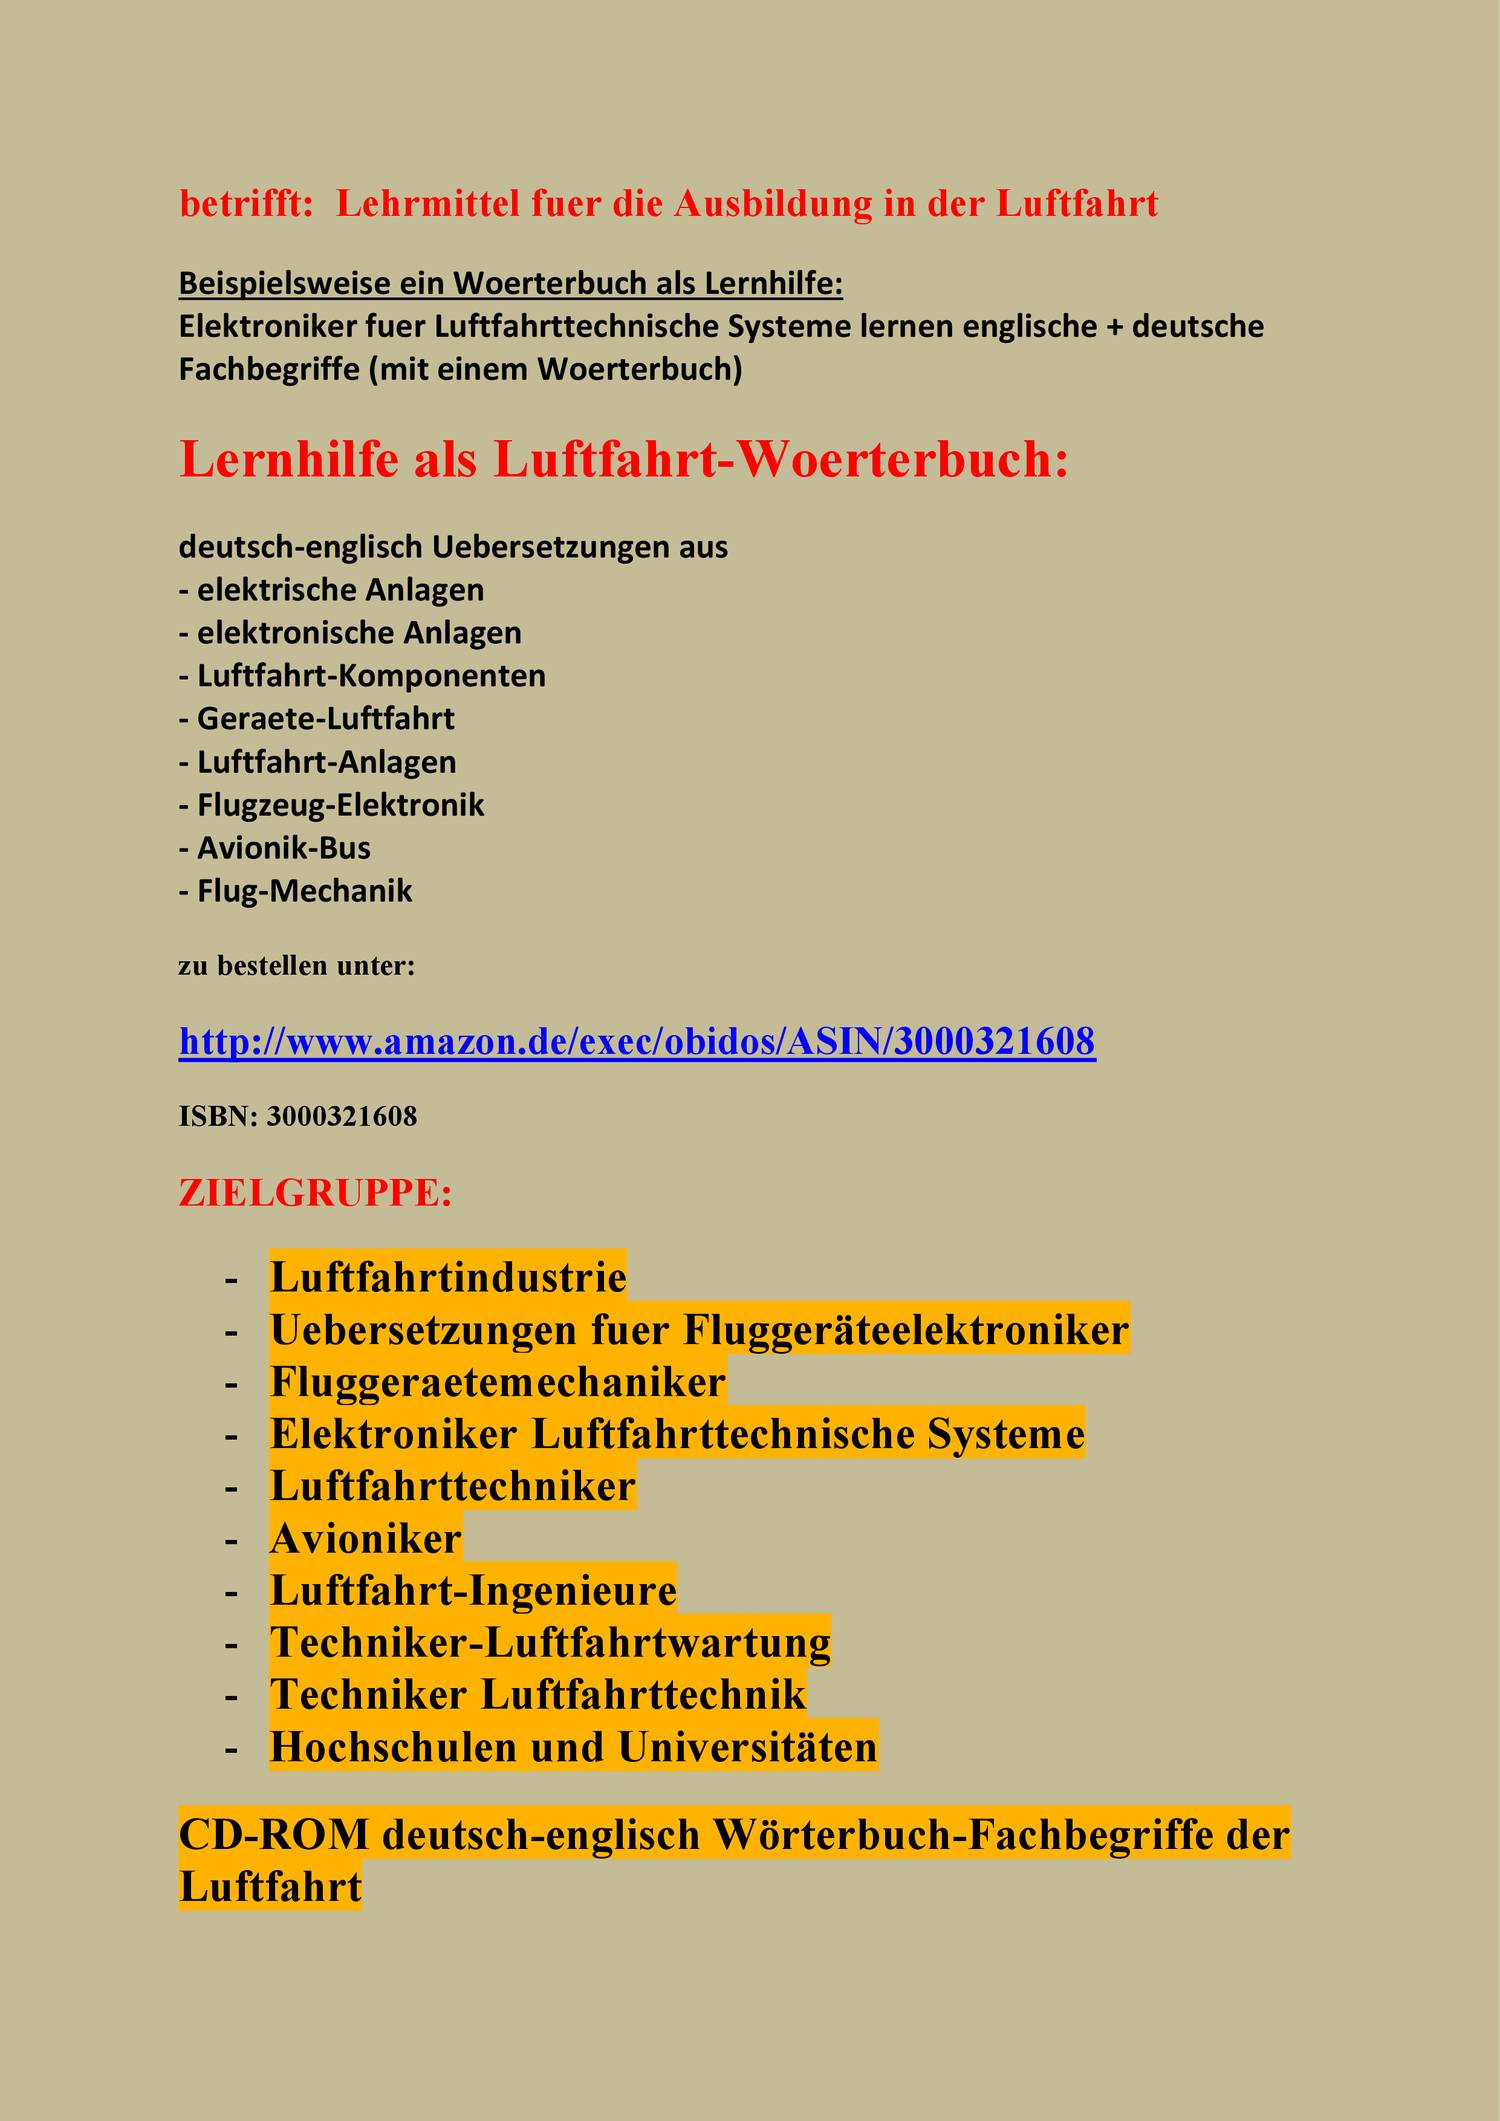 deutsch-englisch-luftfahrt-lexikon-pdf-docdroid